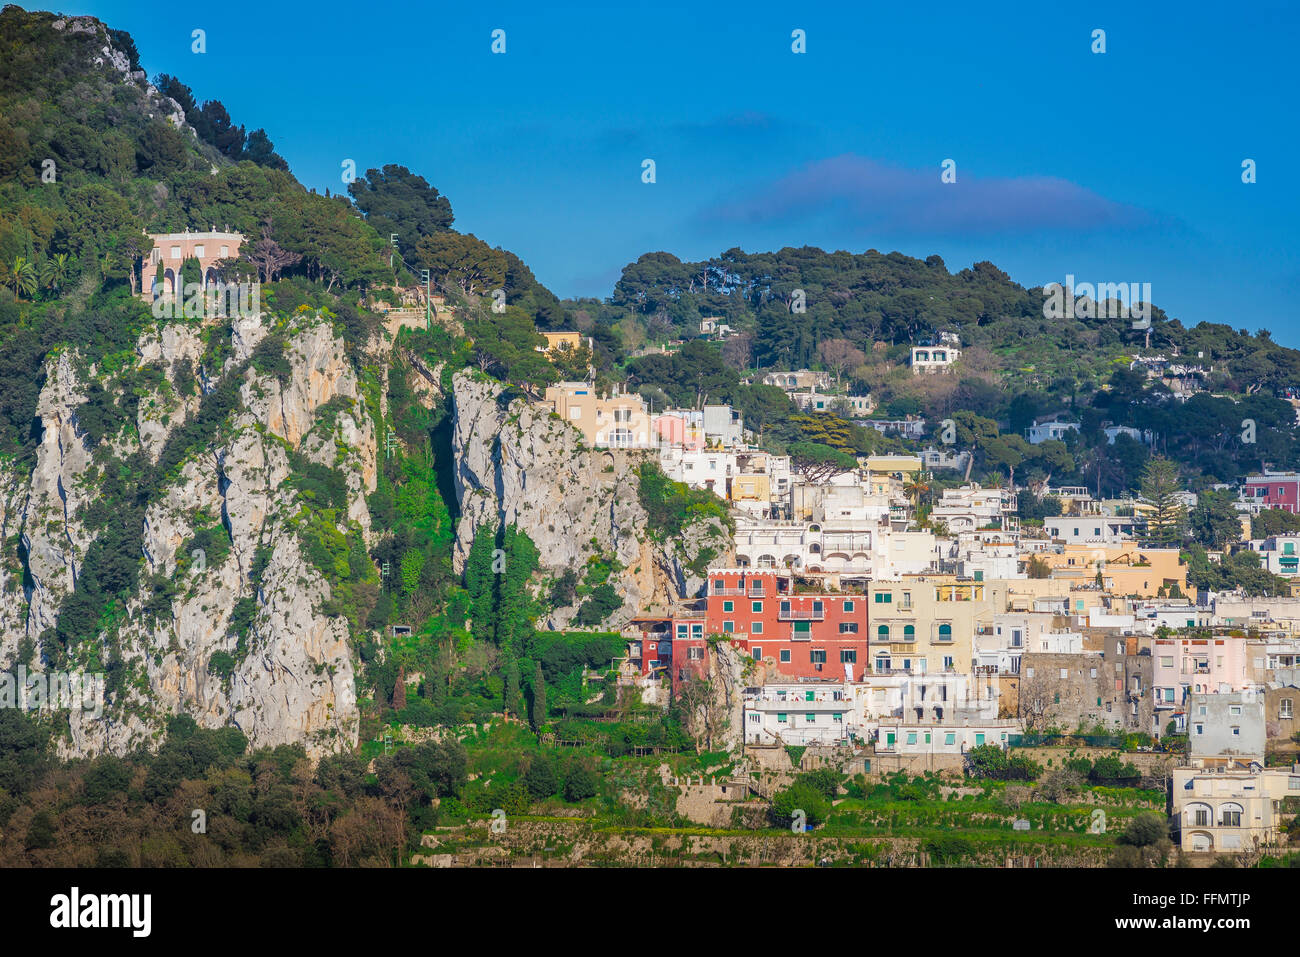 Capri Stadt, Blick im Sommer auf Gebäude, die sich über eine Reihe von hohen Hügeln in der Mitte der Insel Capri, Italien, befinden. Stockfoto